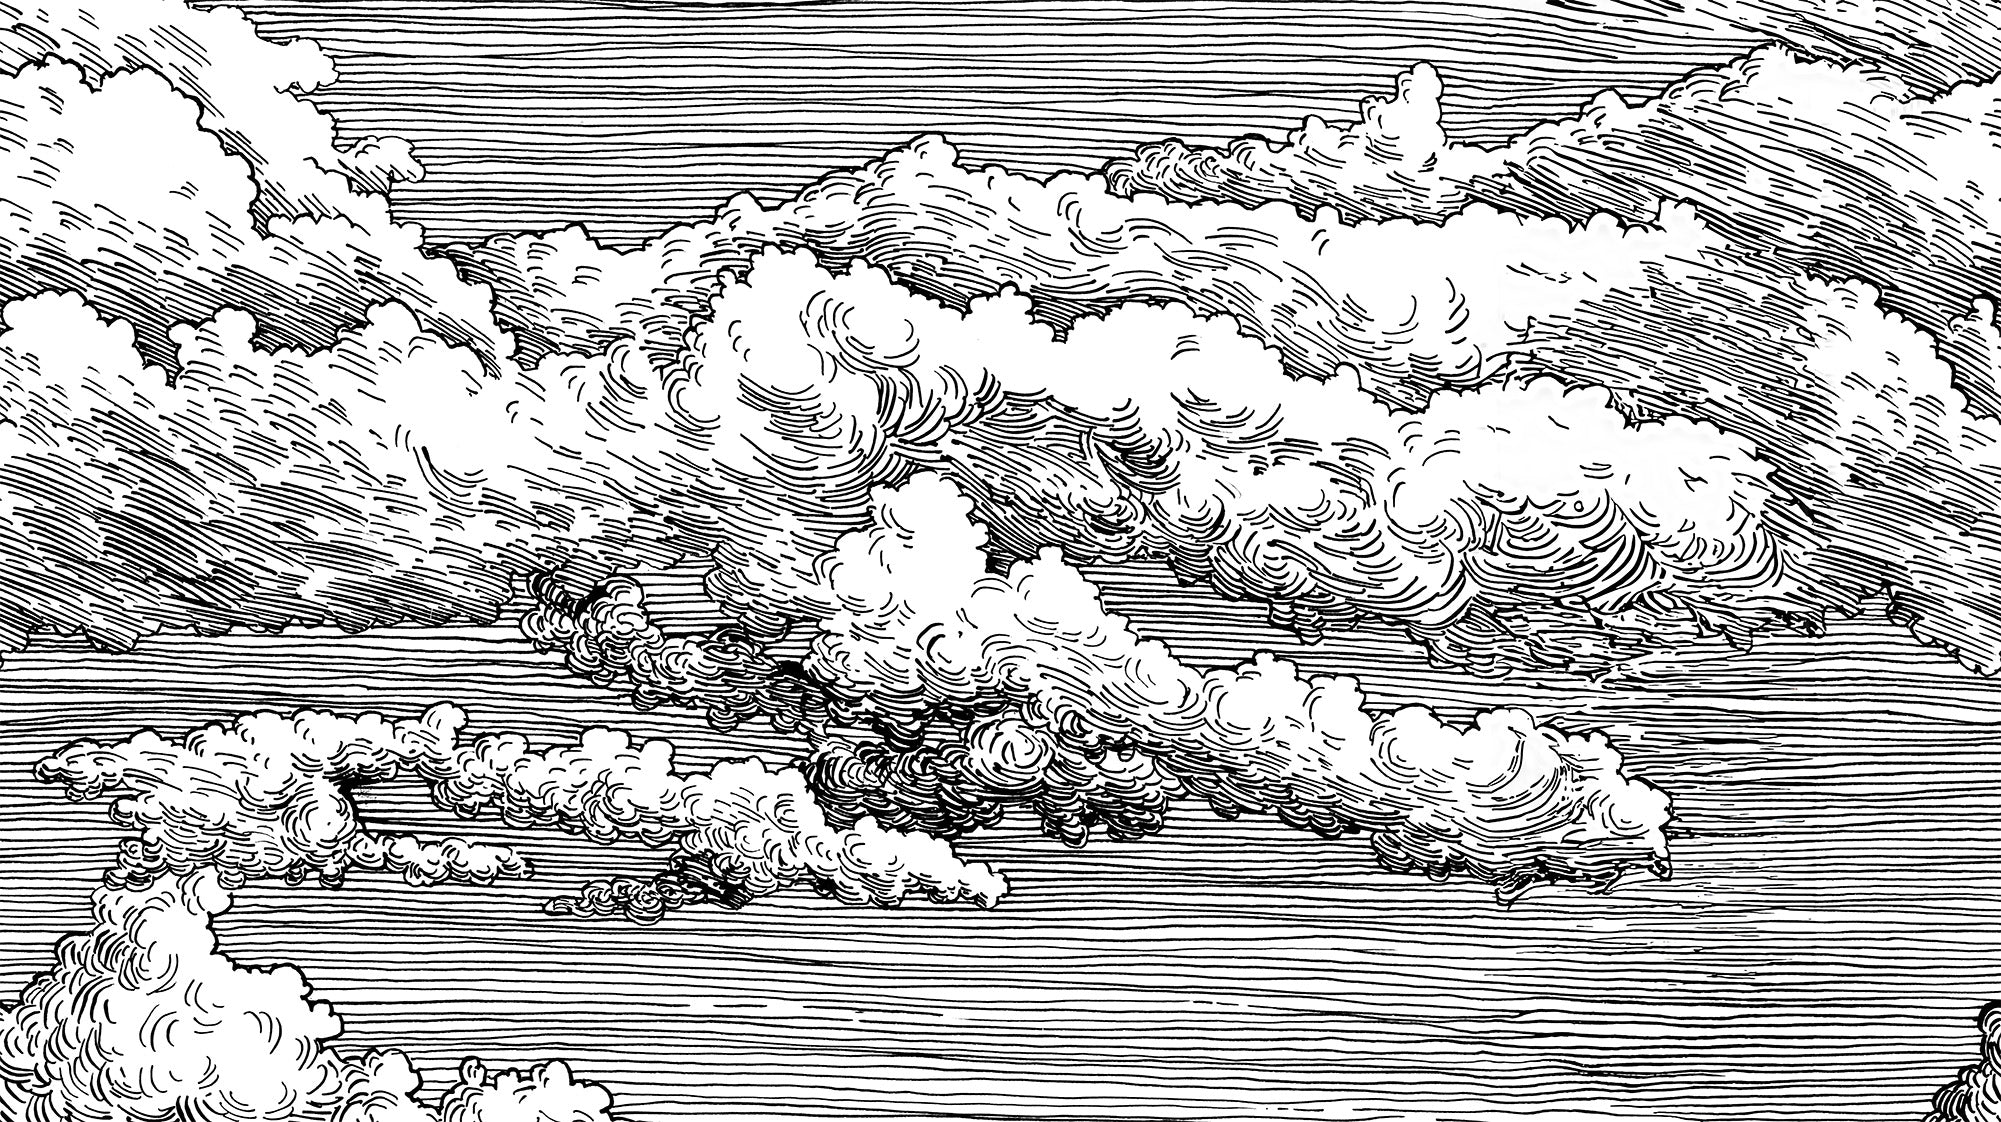 Abut - Mural de papel pintado con dibujo lineal monocromo de nubes en blanco y negro